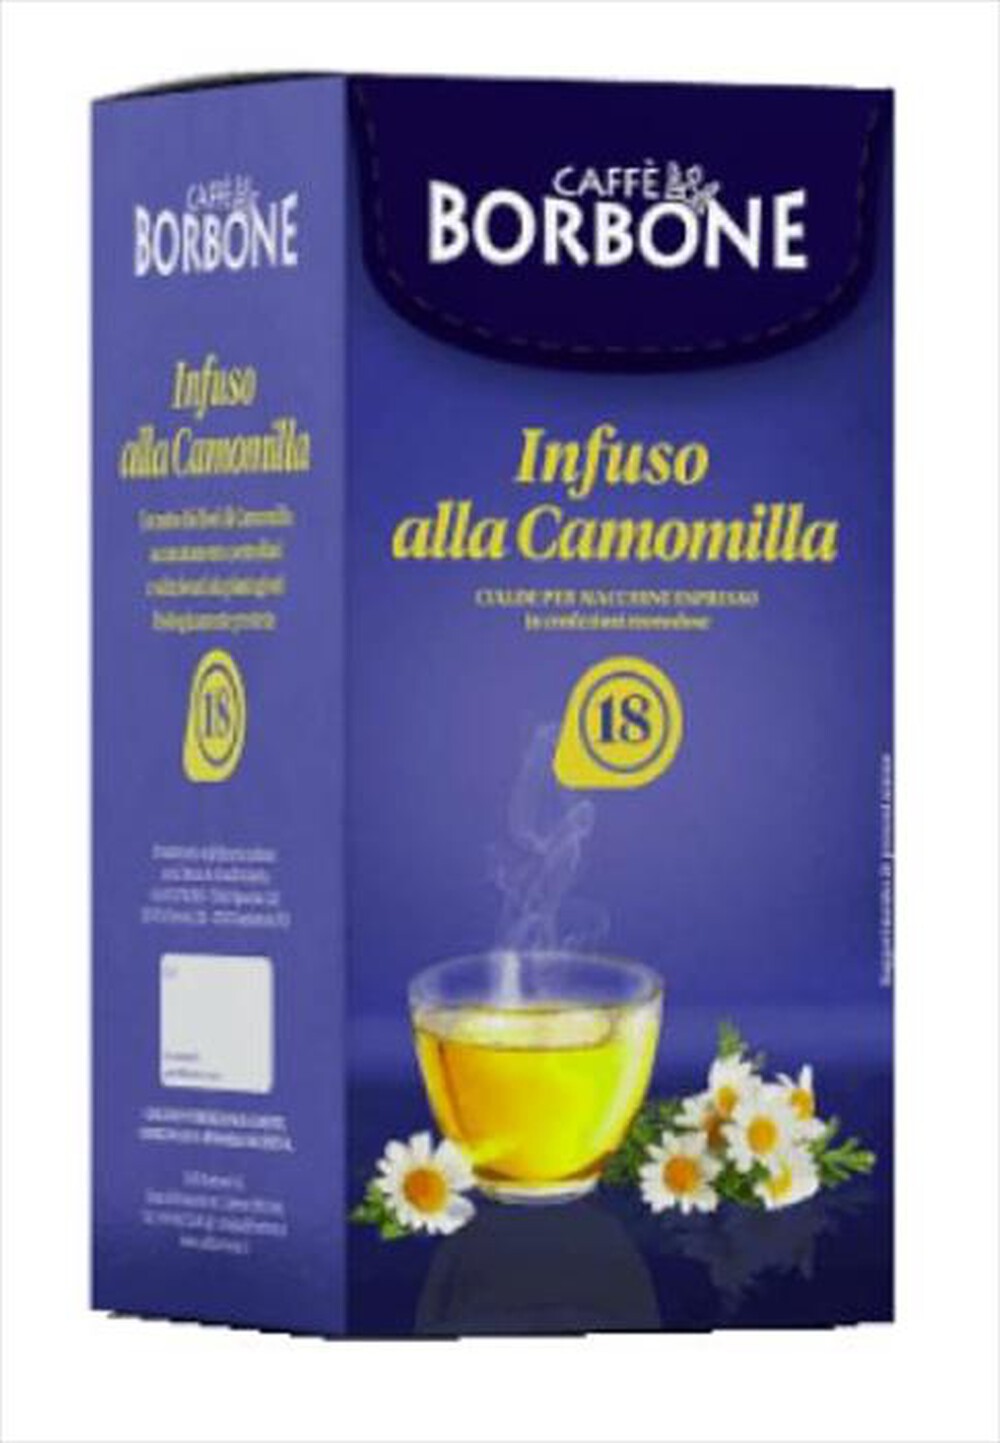 "CAFFE BORBONE - Camomilla - 18 pz - "